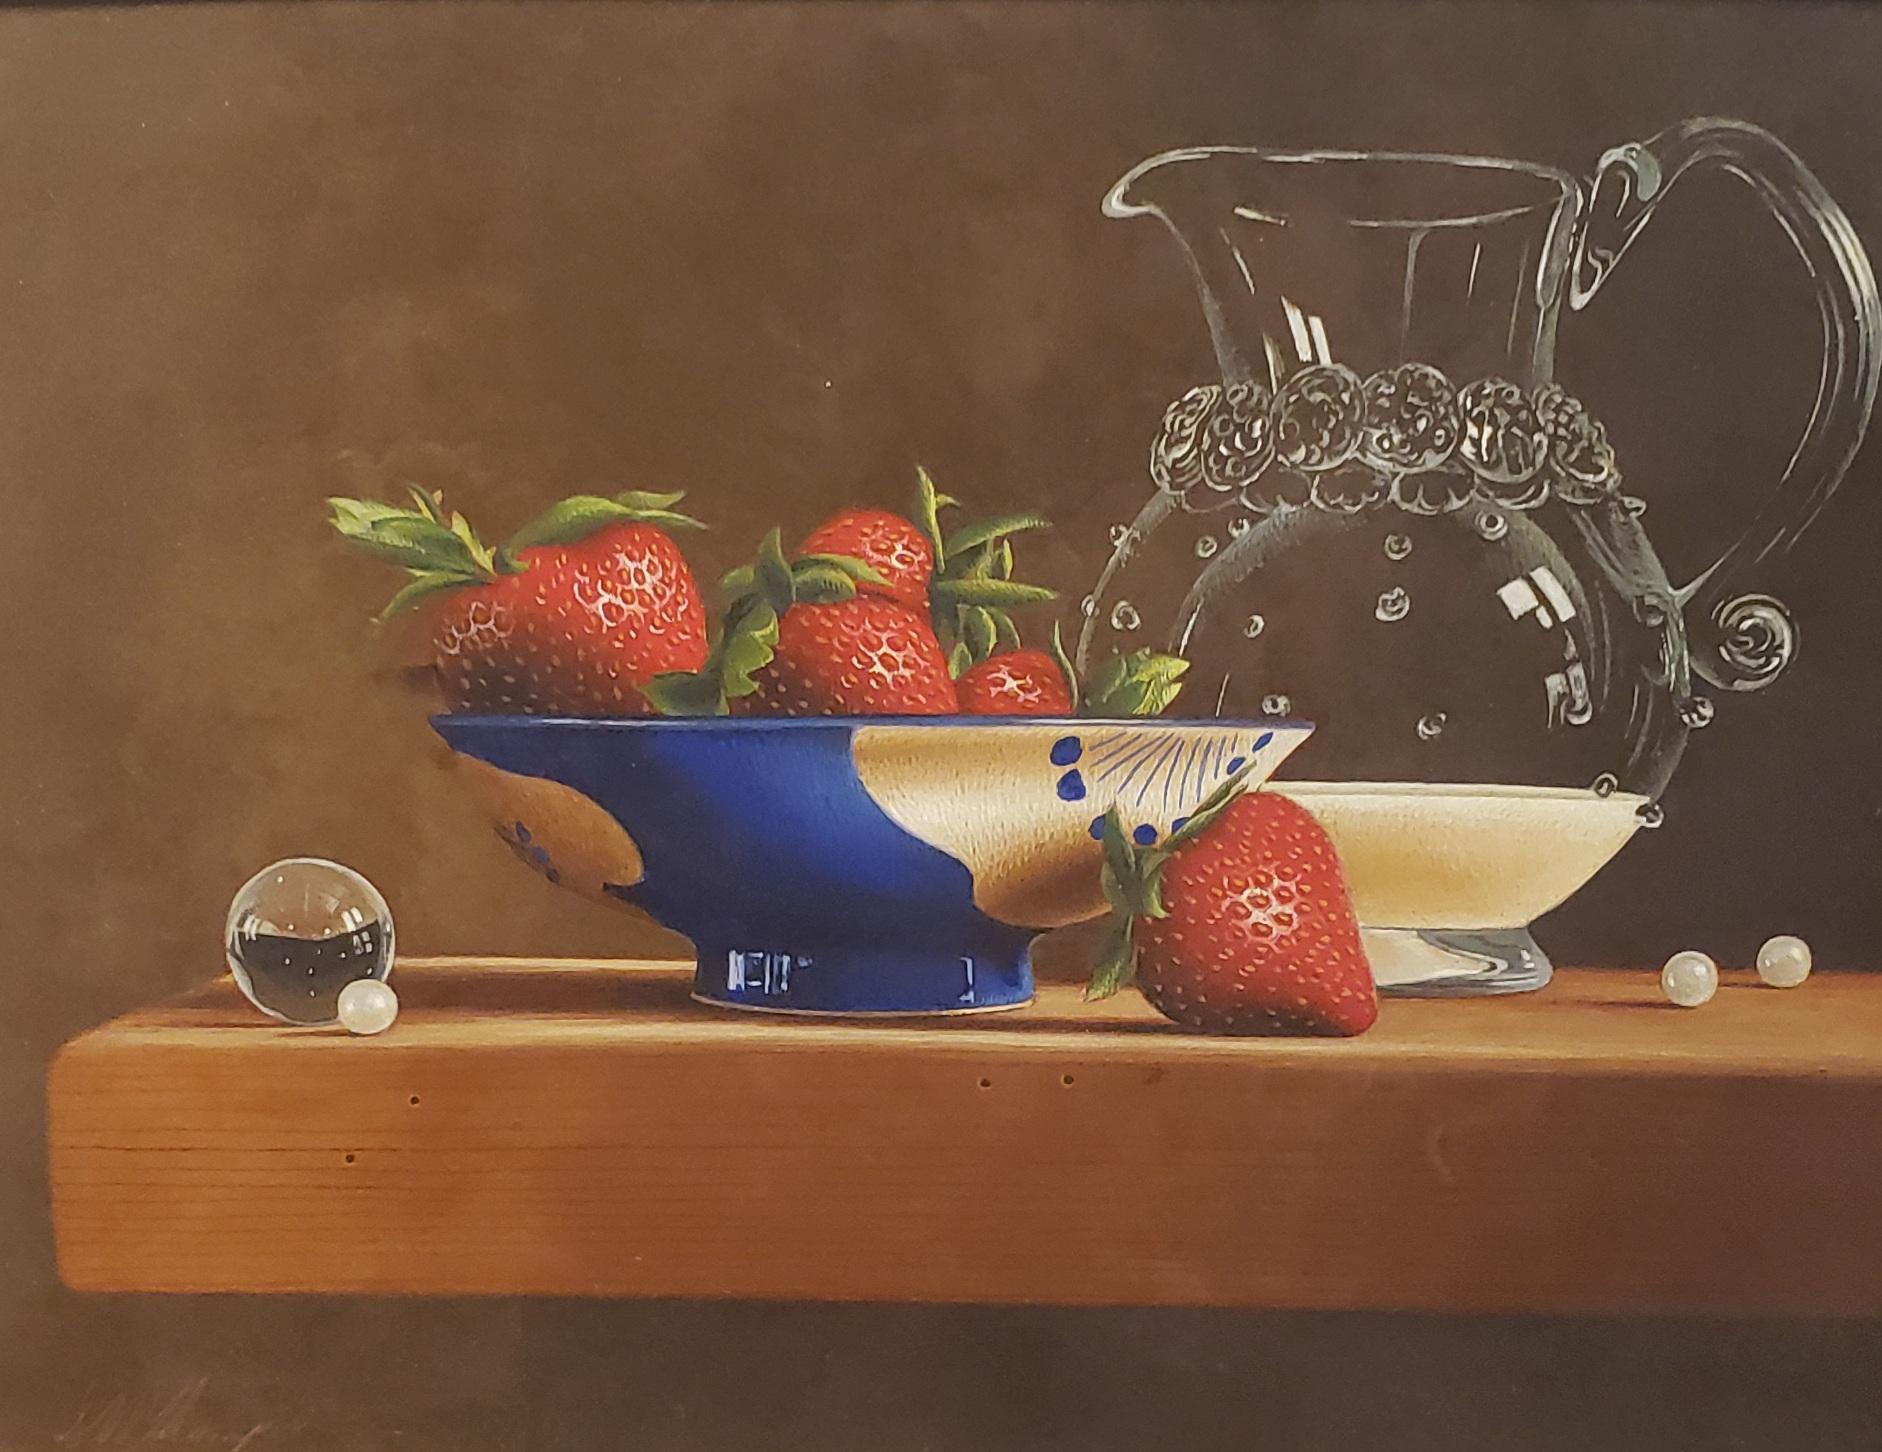 Erdbeer und Creme, Eitempera,  Realismus,  3D-Applikation, amerikanische Künstlerin – Painting von Mark Thompson